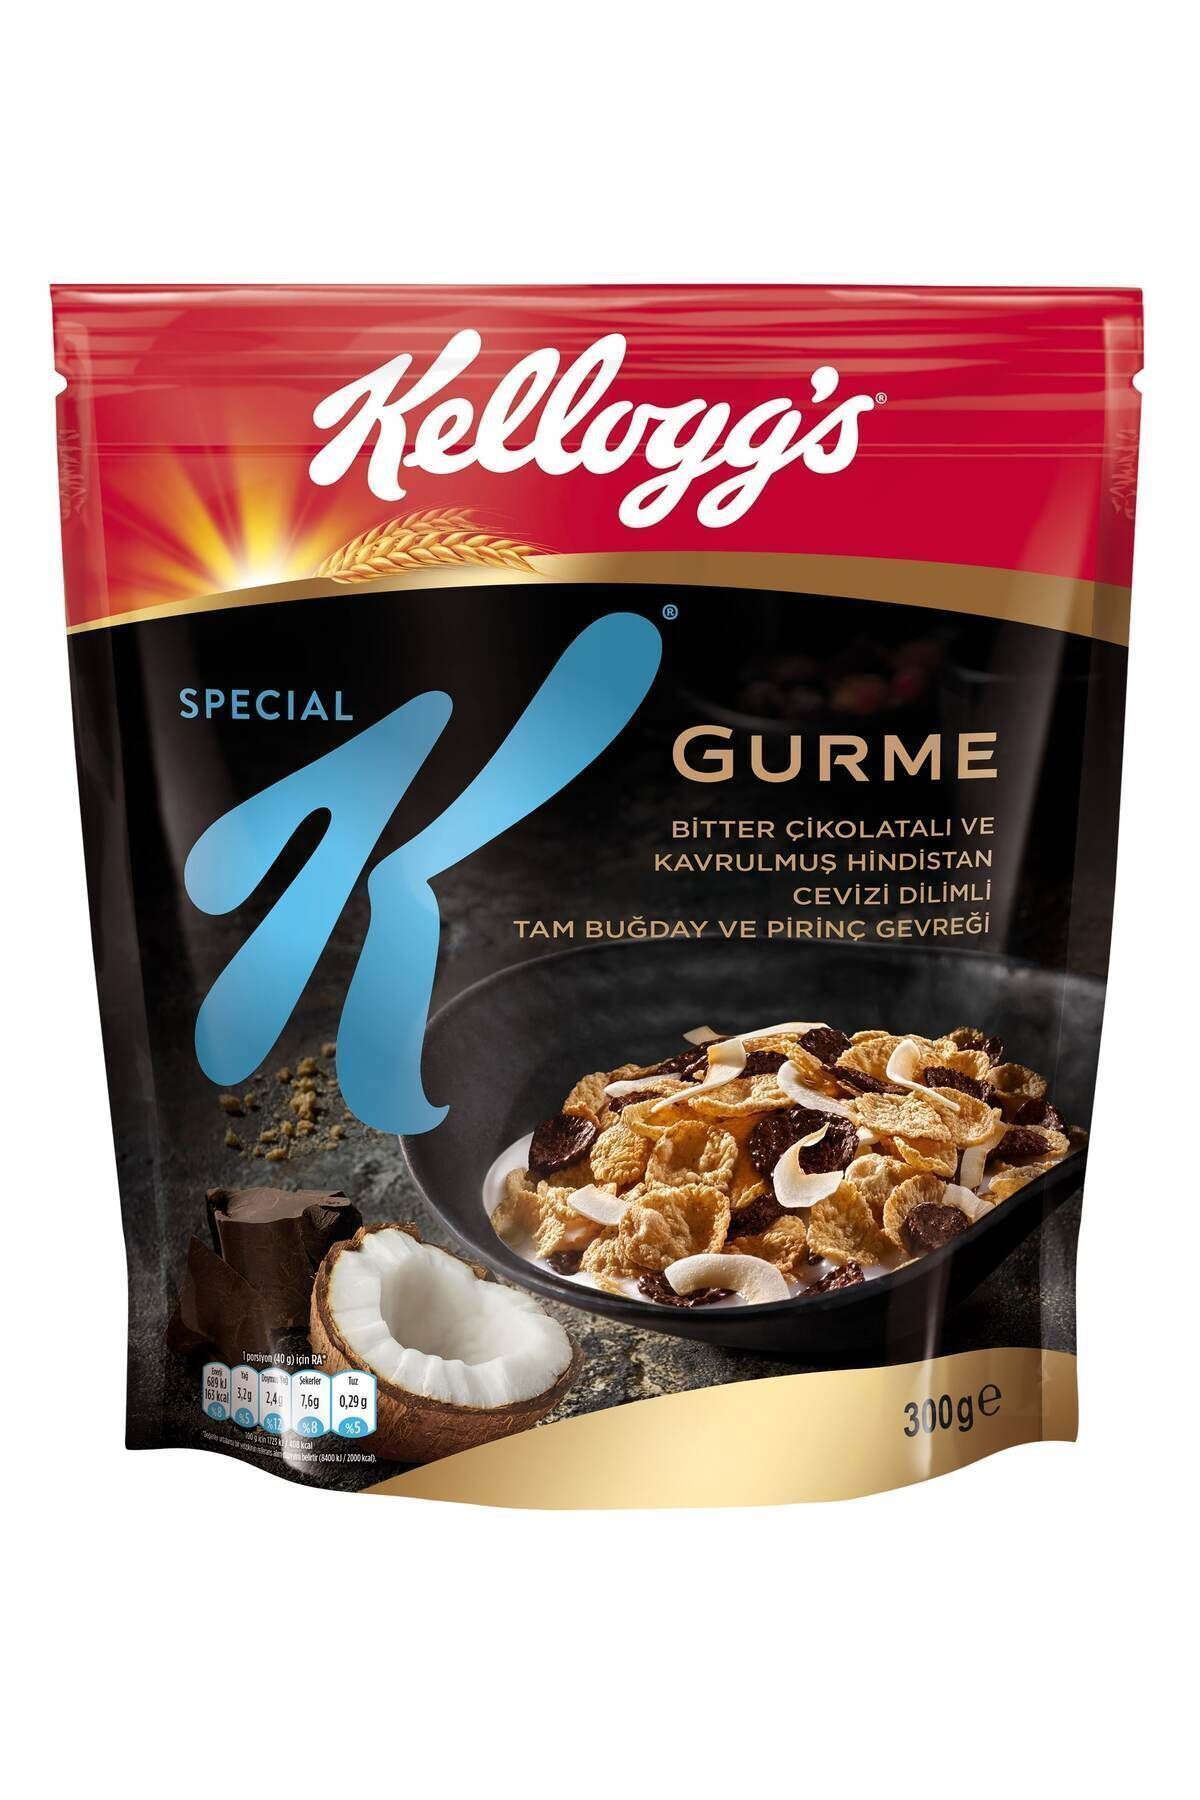 Kellogg's Special K Gurme Bitter Çikolatalı Ve Hindistan Cevizi Dilimli Kahvaltılık Gevrek 300gr, %46 Yulaf